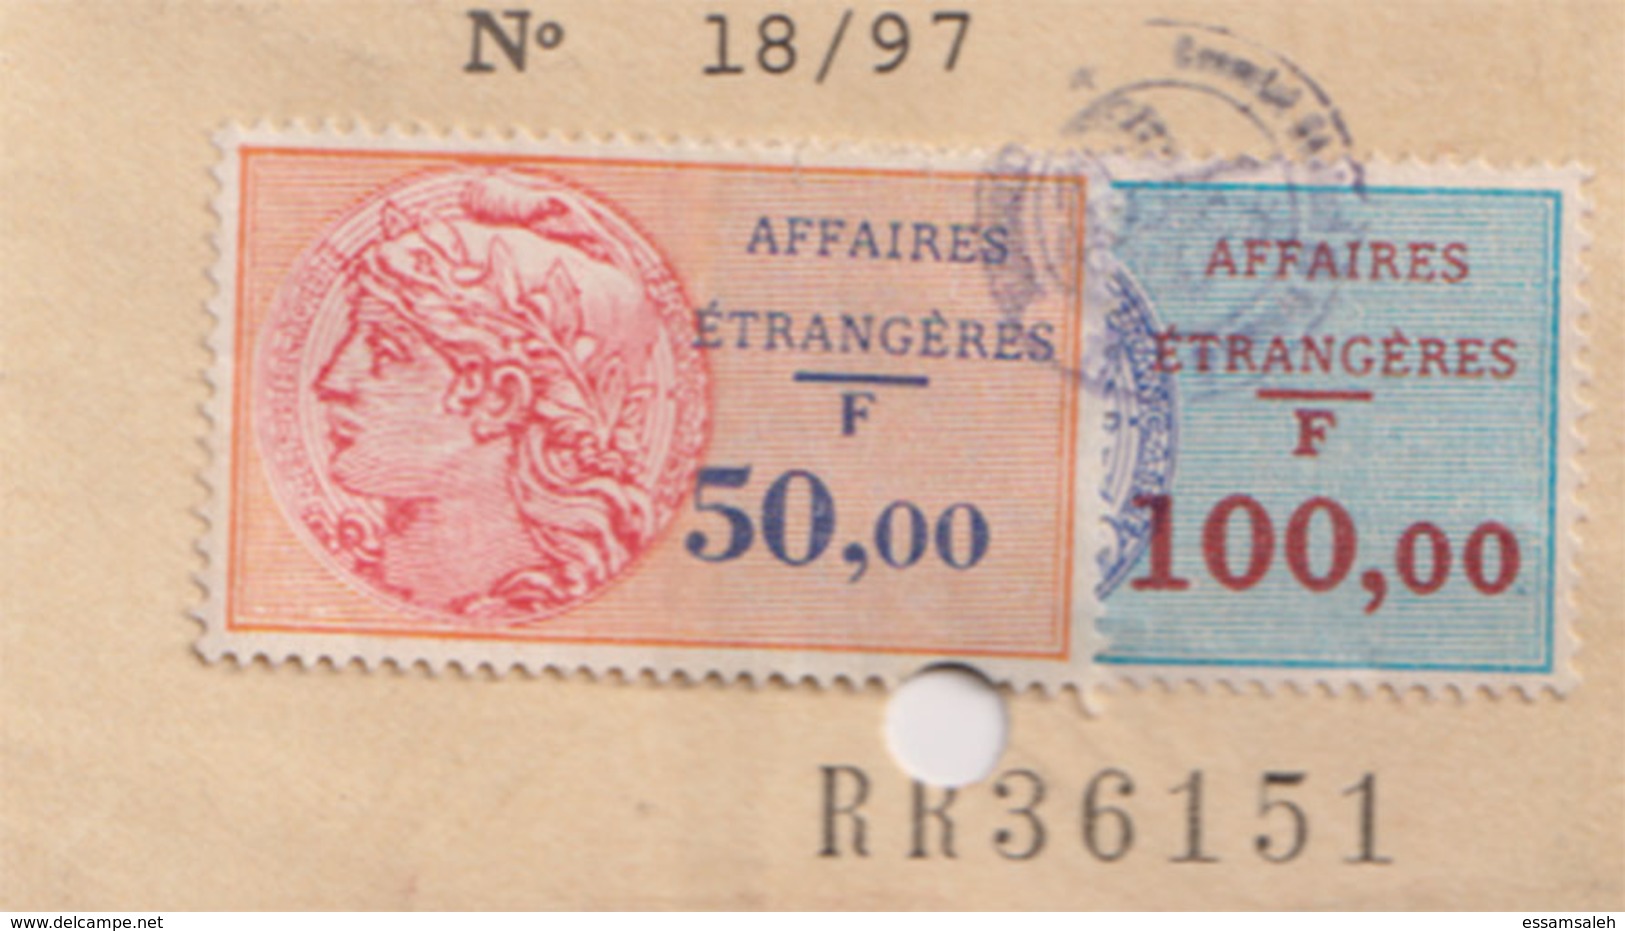 FRD18003 France 1997 Alexandria Consulat National ID Card Carte Nationale D'identité / Affaires Etrangeres Revenues - Documents Historiques